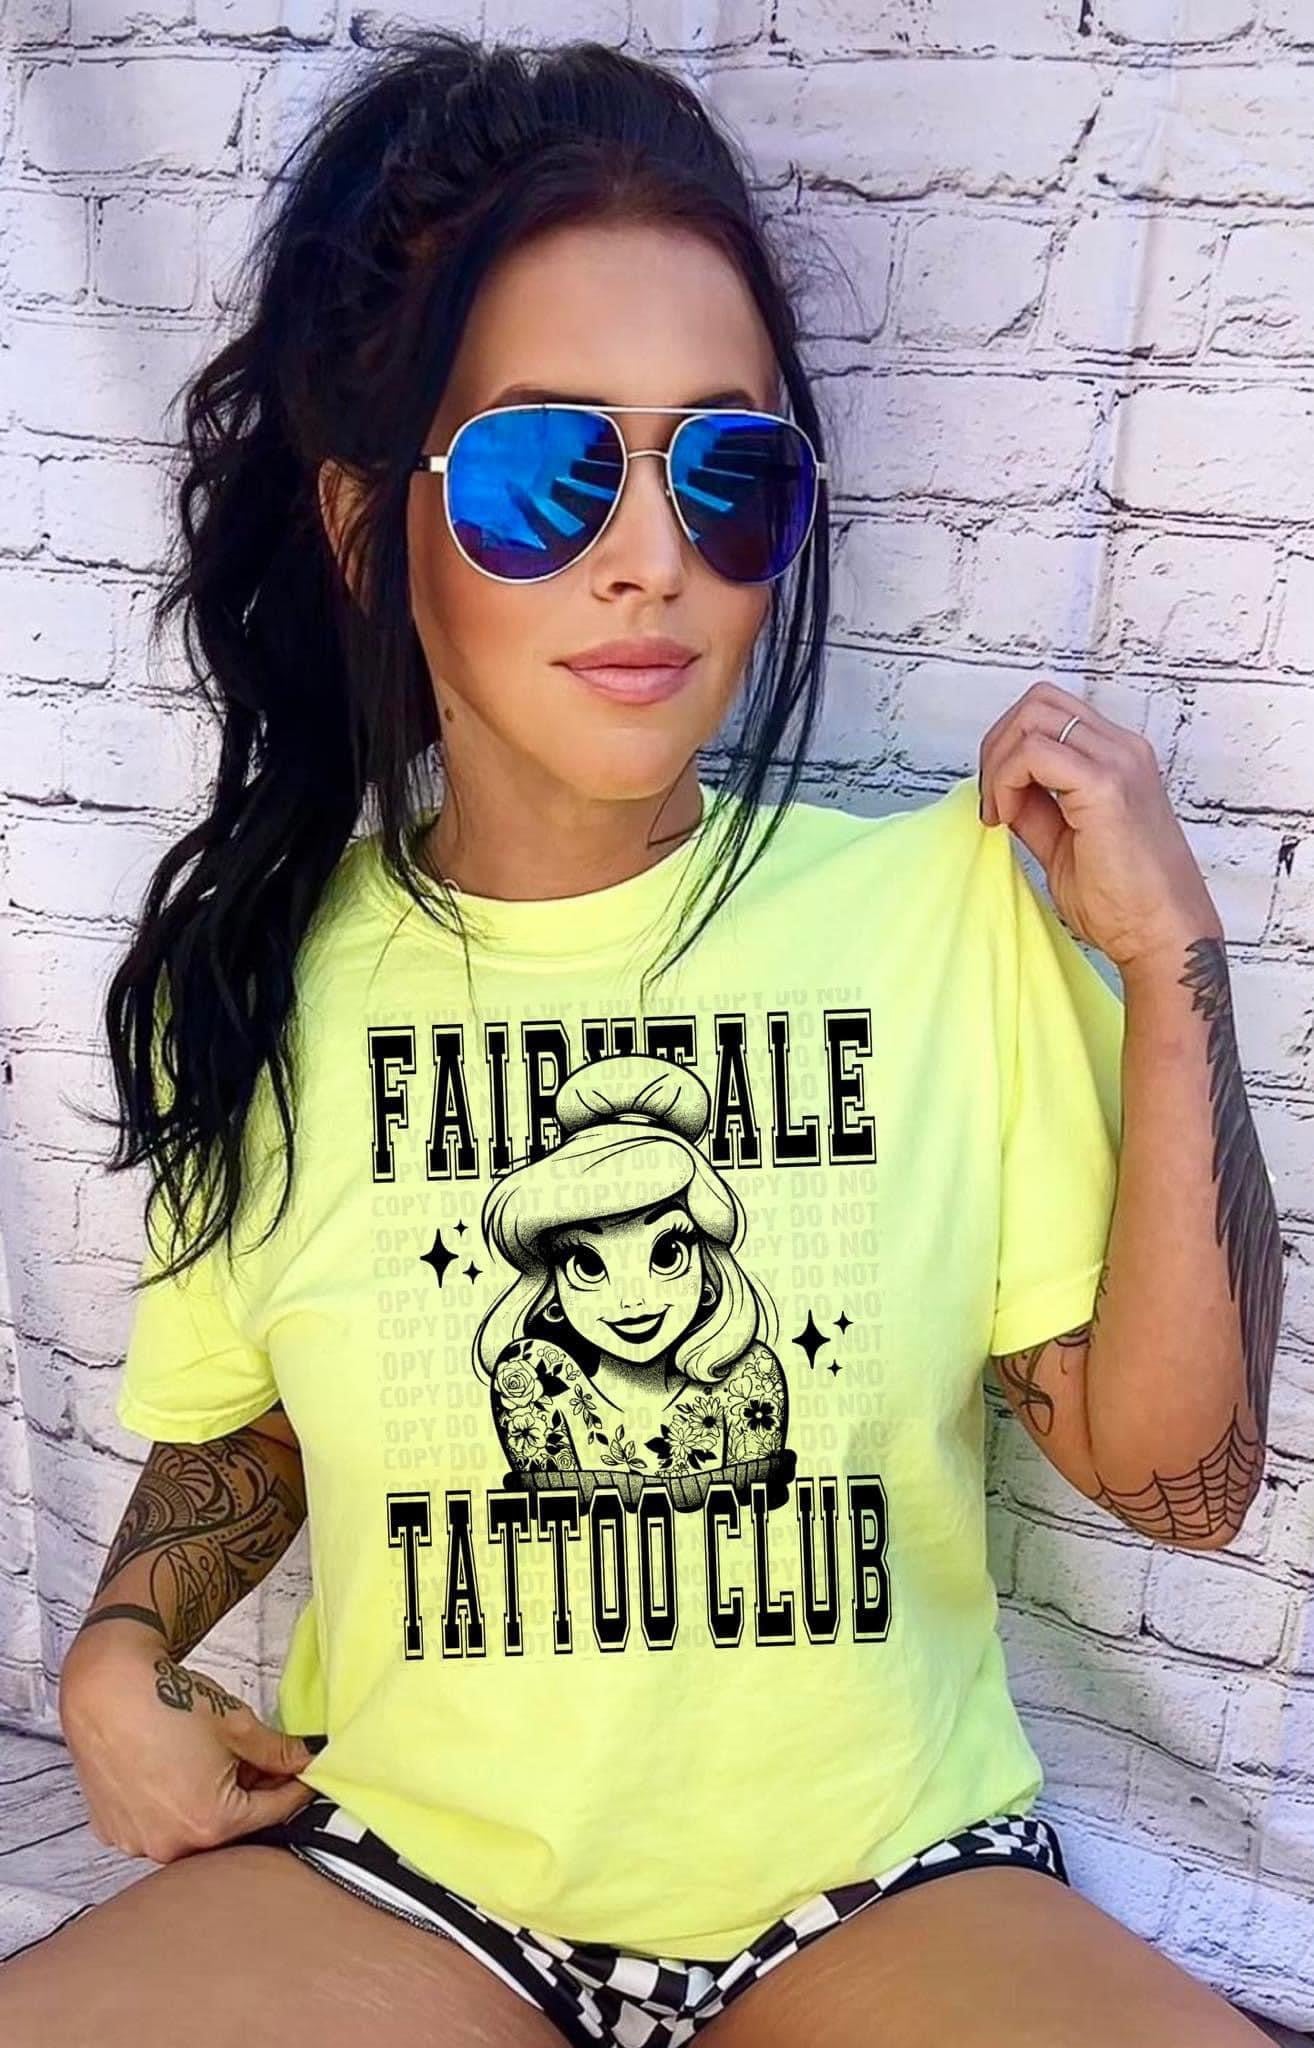 Tattoo Club Tshirt